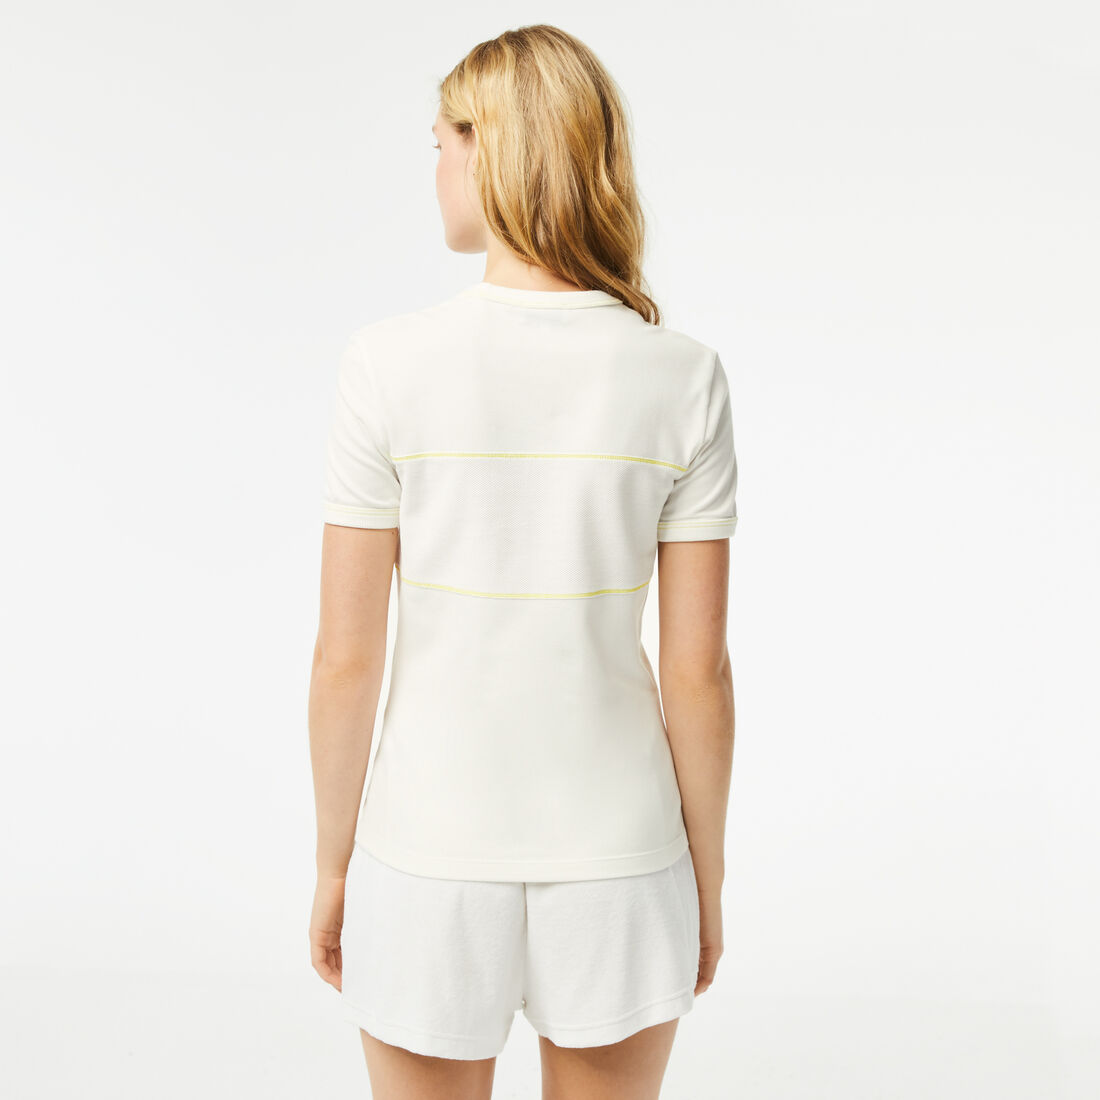 Lacoste Round Neck French Made Organic Baumwoll Piqué T-shirts Damen Weiß | JMCH-83246